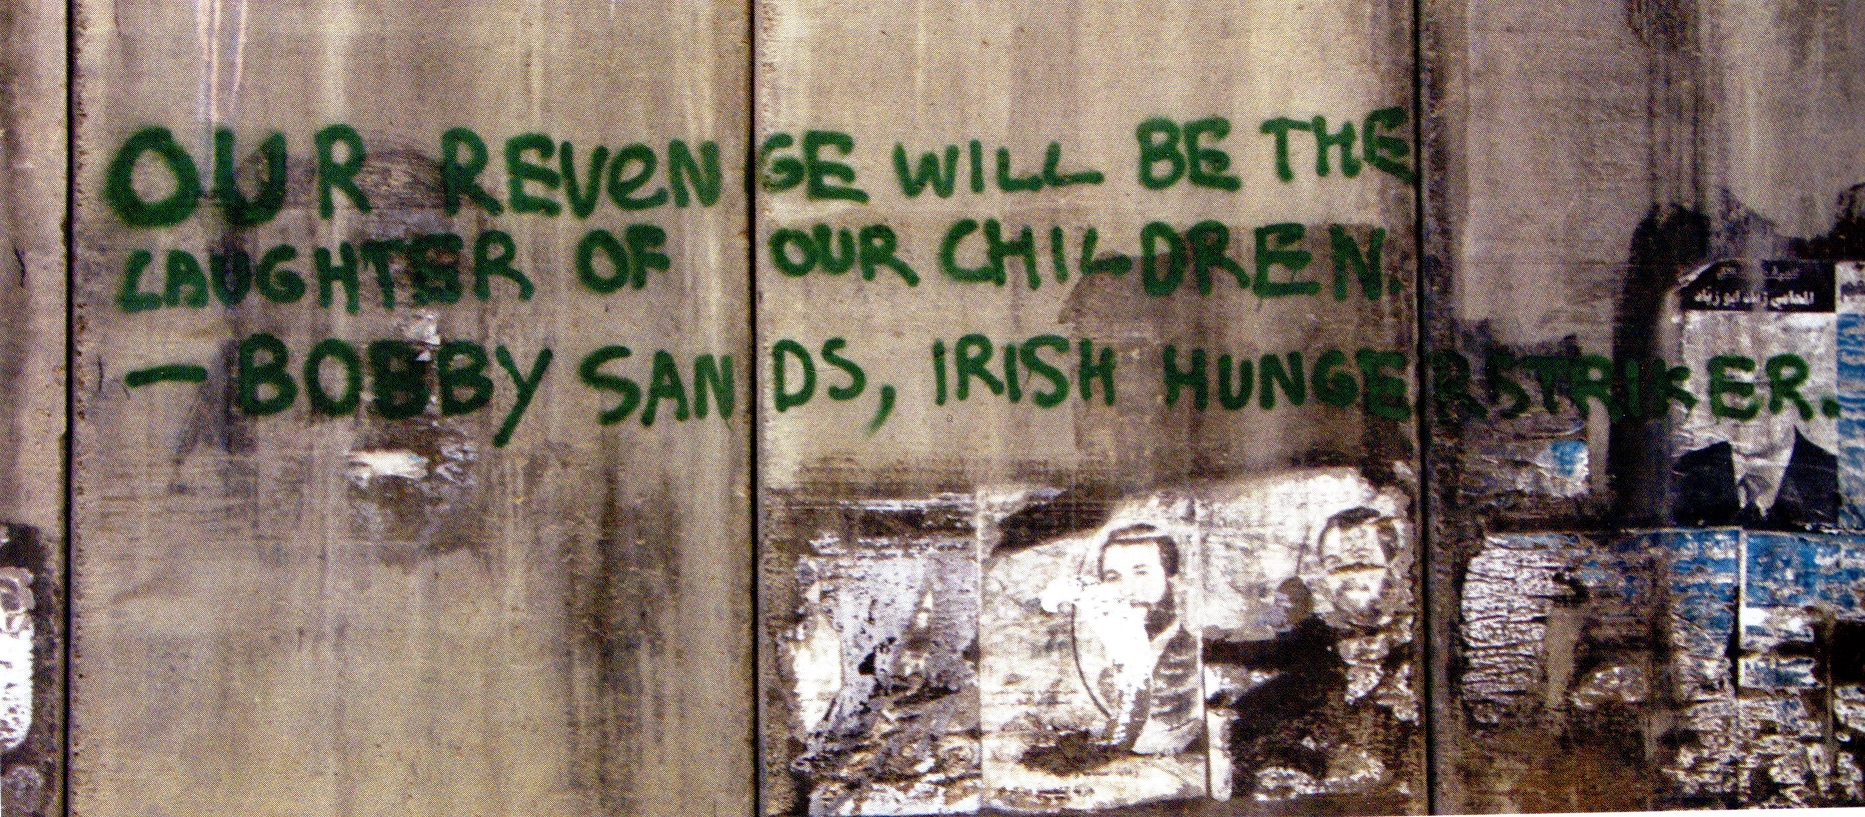 "انتقامنا سيكون ضحكات أطفالنا"، اقتباس من المناضل الأيرلندي بوبي ساندز مكتوب على جدار الفصل العنصري.